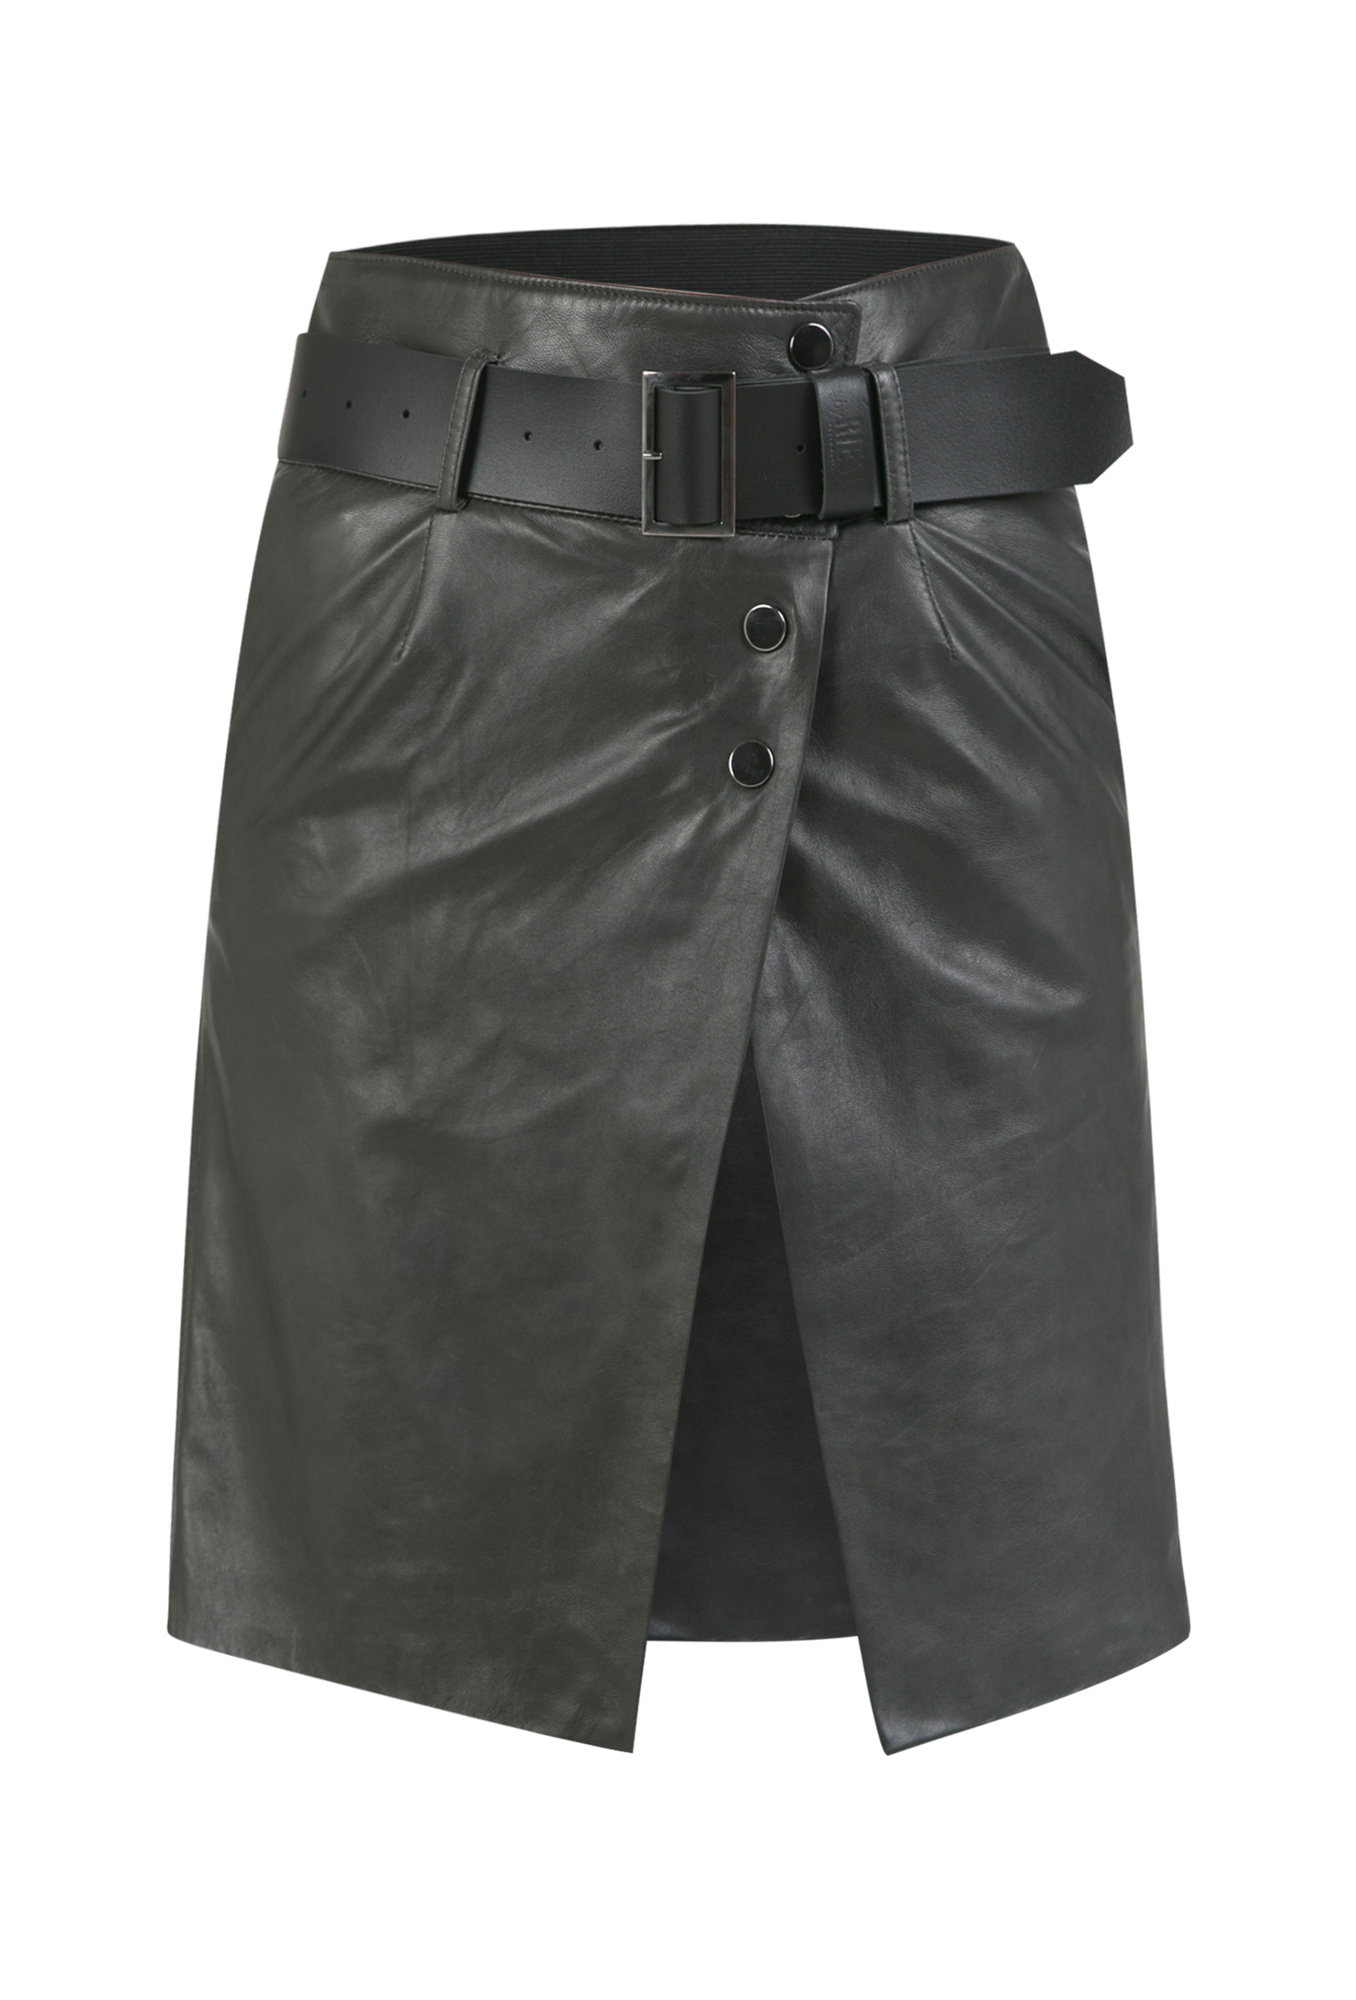 leather skirt, leather skirt with leather strap, gray leather skirt, gray leather skirt with petticoat, Italian leather skirt, natural leather skirt, gray leather skirt, leather skirts with belt, premium